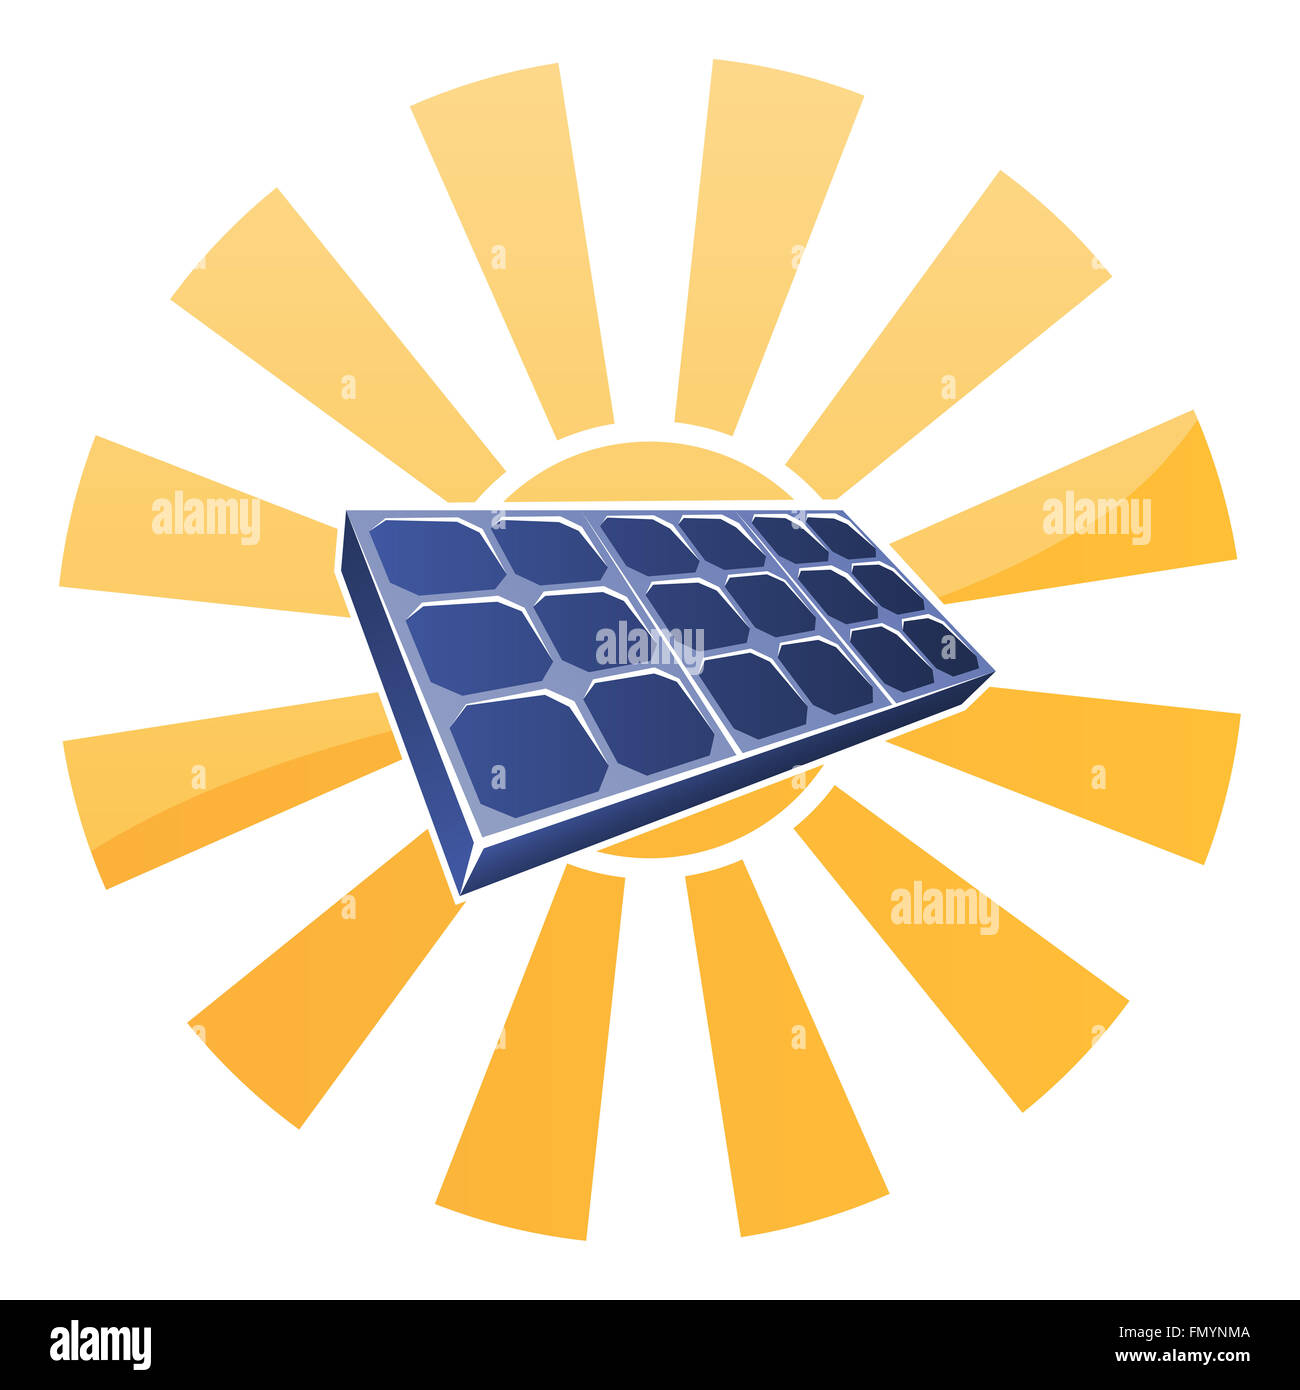 Sun e pannello solare fotovoltaico concetto di cella Foto Stock